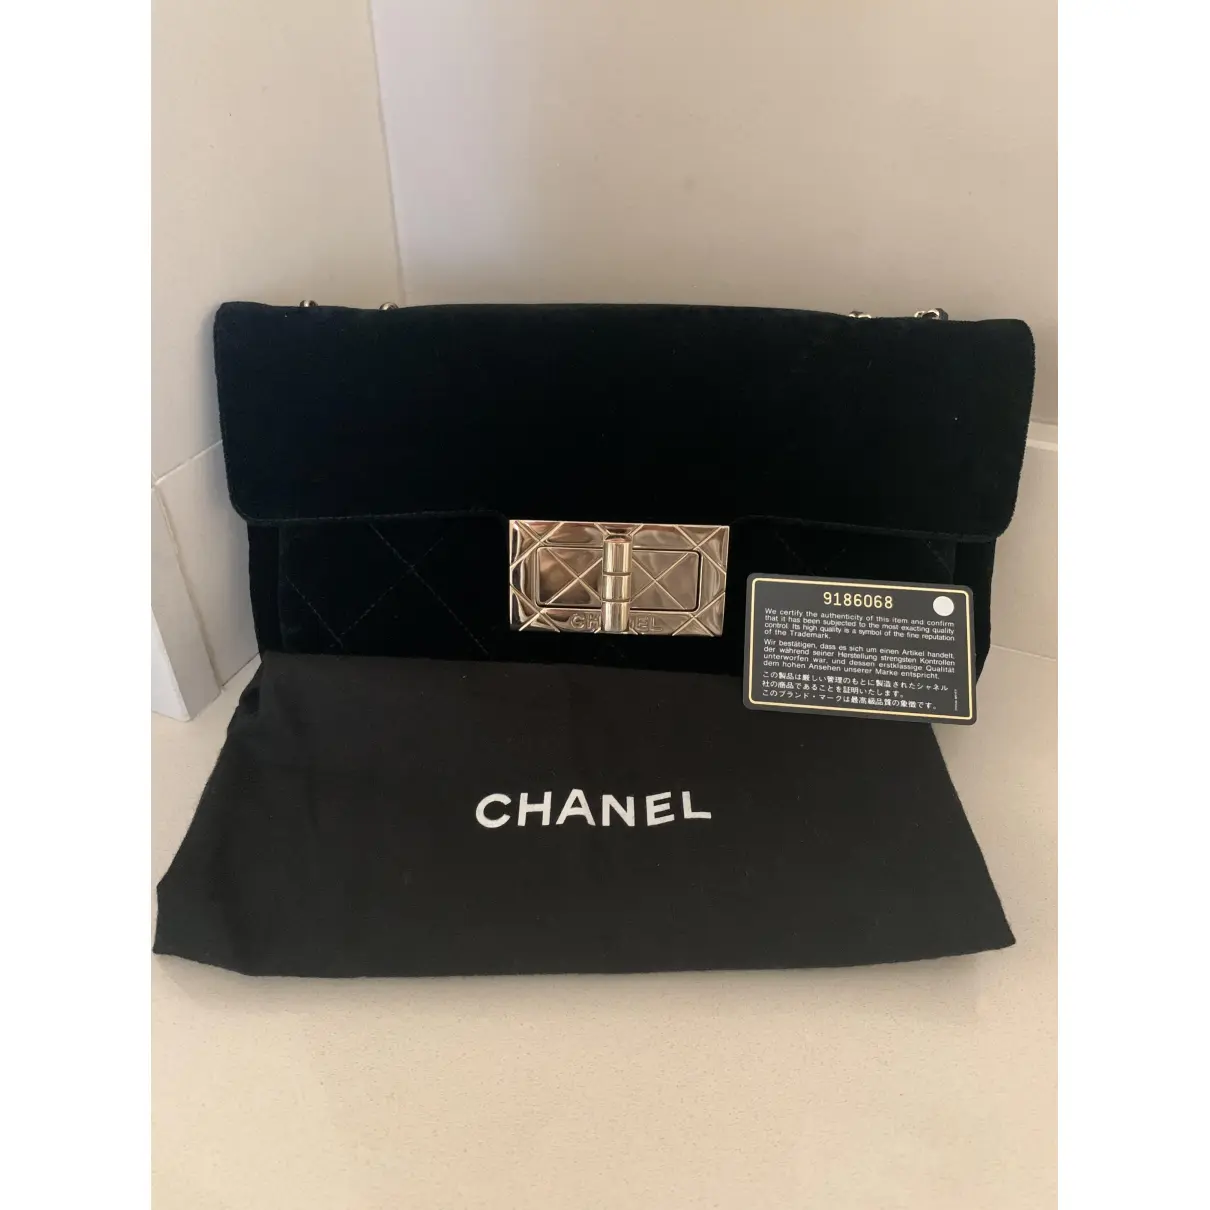 Buy Chanel Velvet handbag online